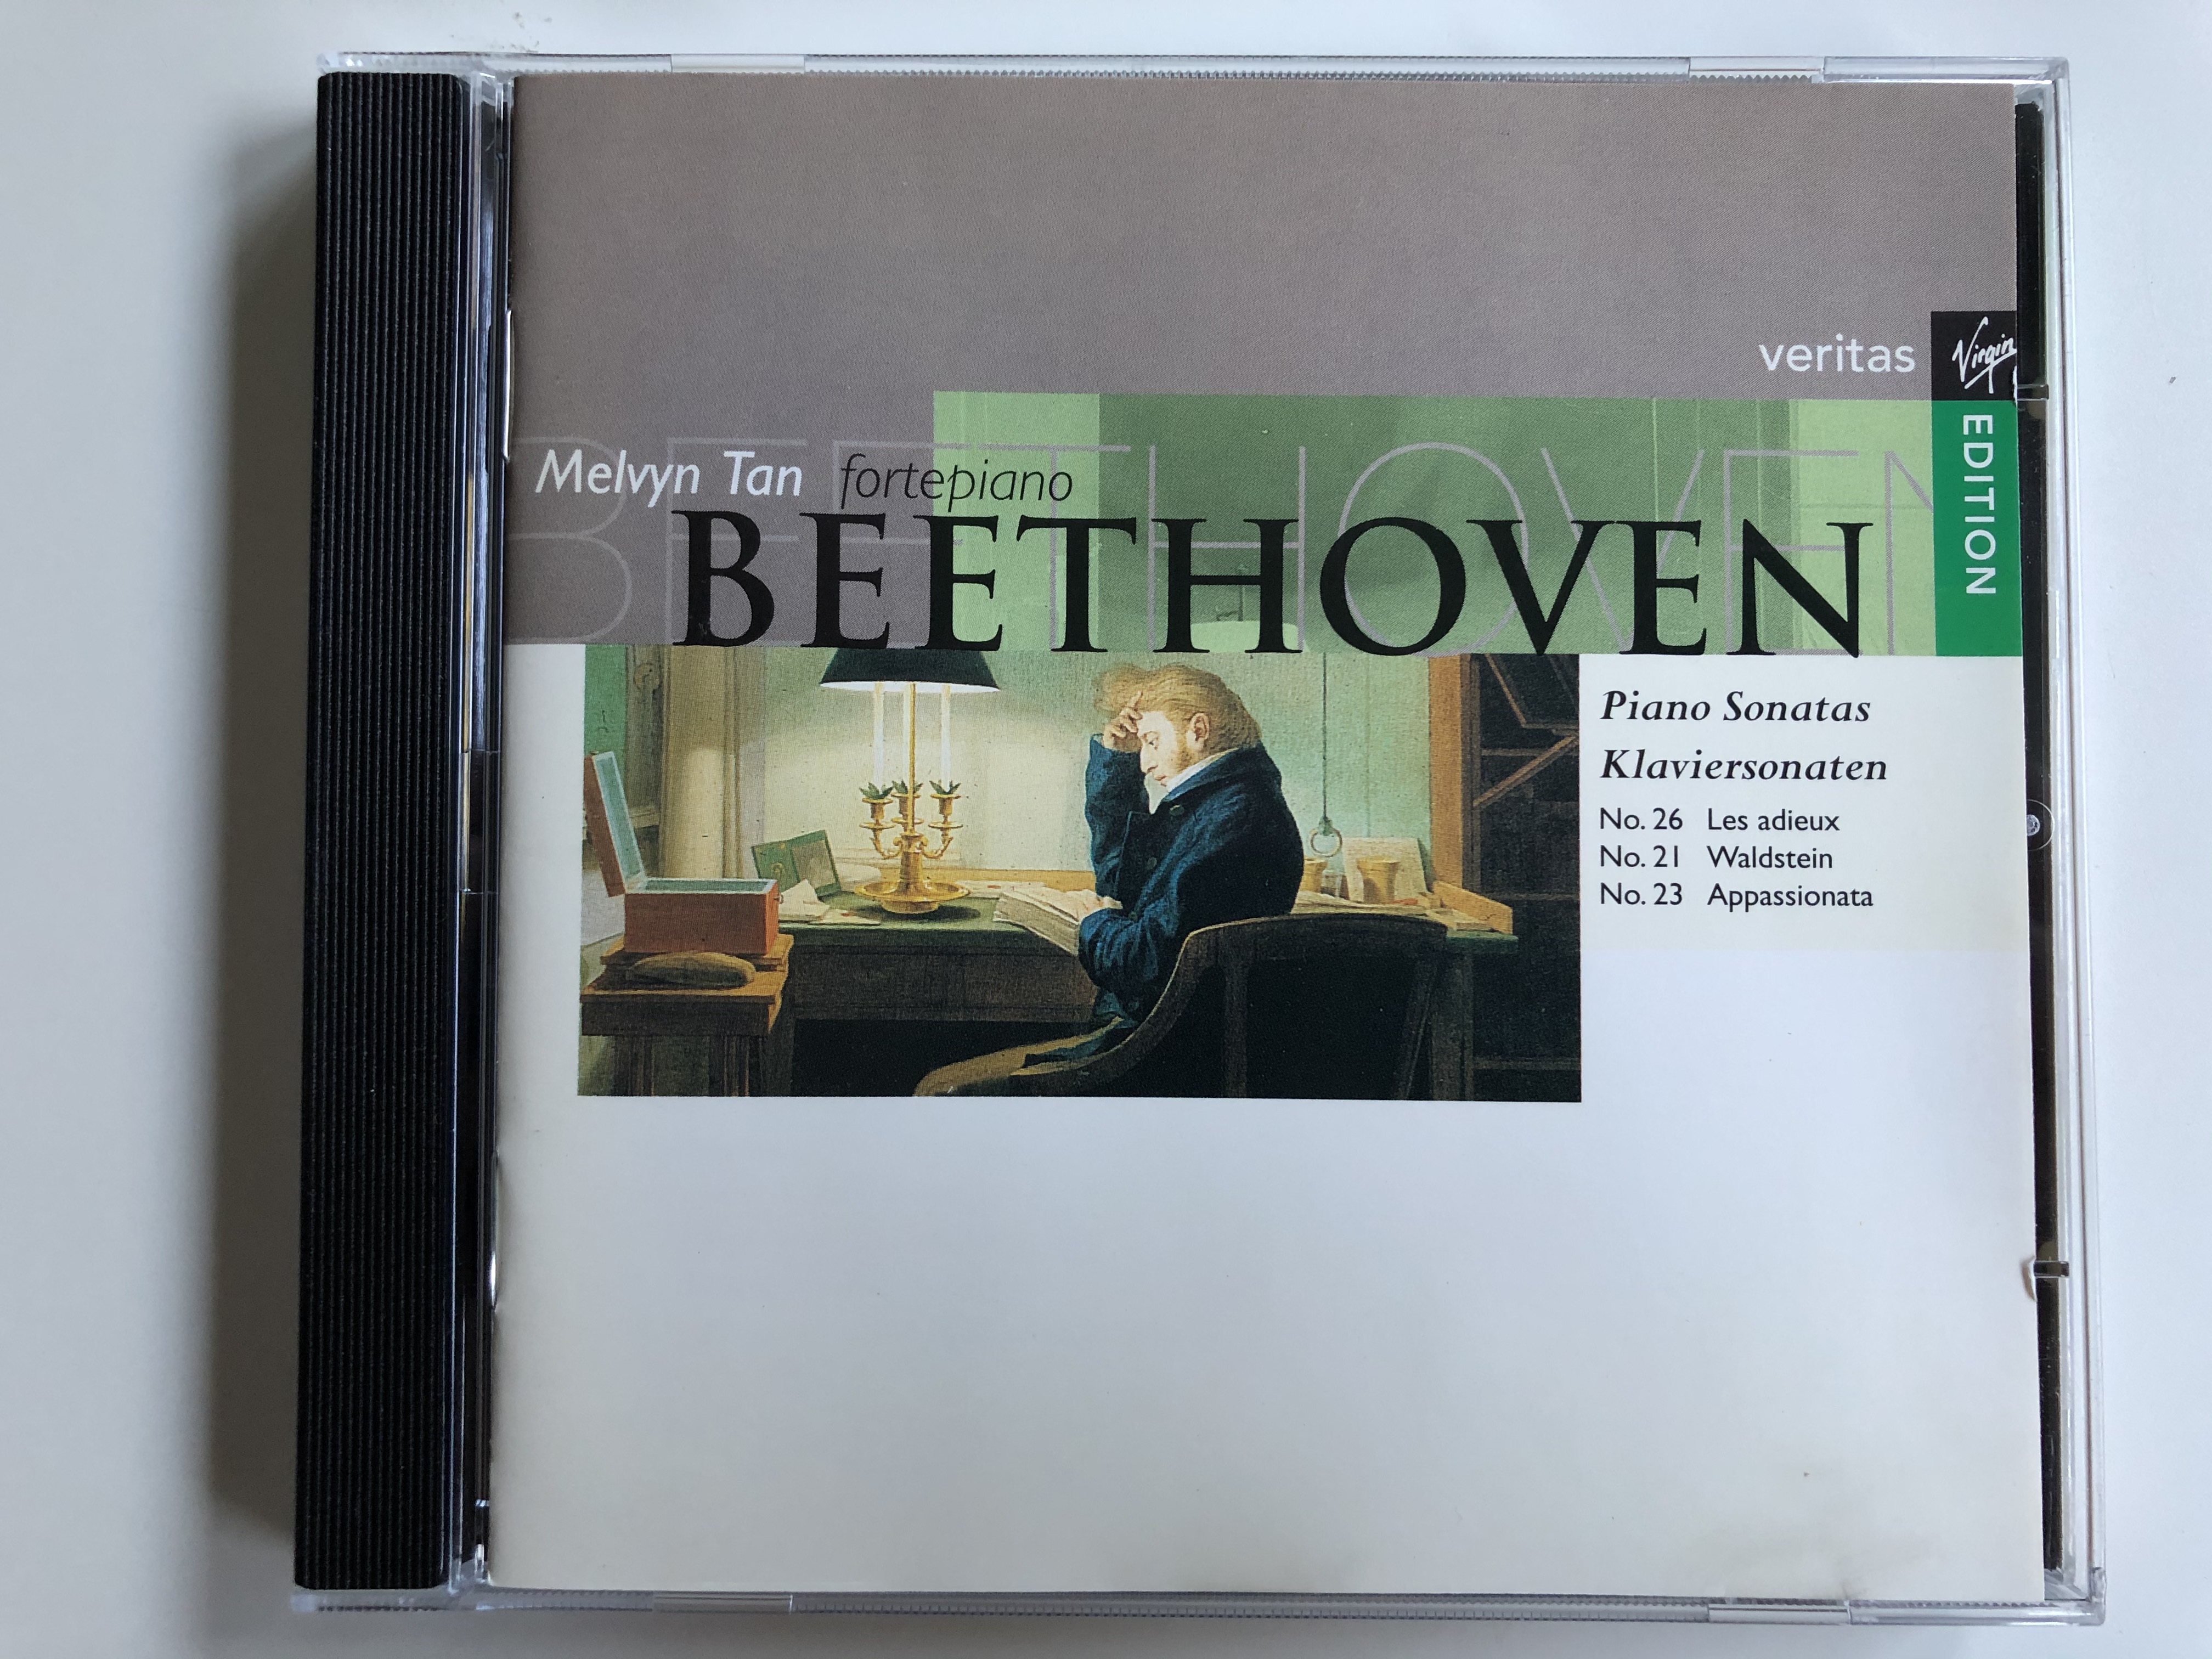 melvyn-tan-fortepiano-beethoven-piano-sonatas-klaviersonaten-no.-26-les-adieux-no.-21-waldstein-no.-23-appassionata-virgin-veritas-audio-cd-1994-ver-5-61160-2-1-.jpg